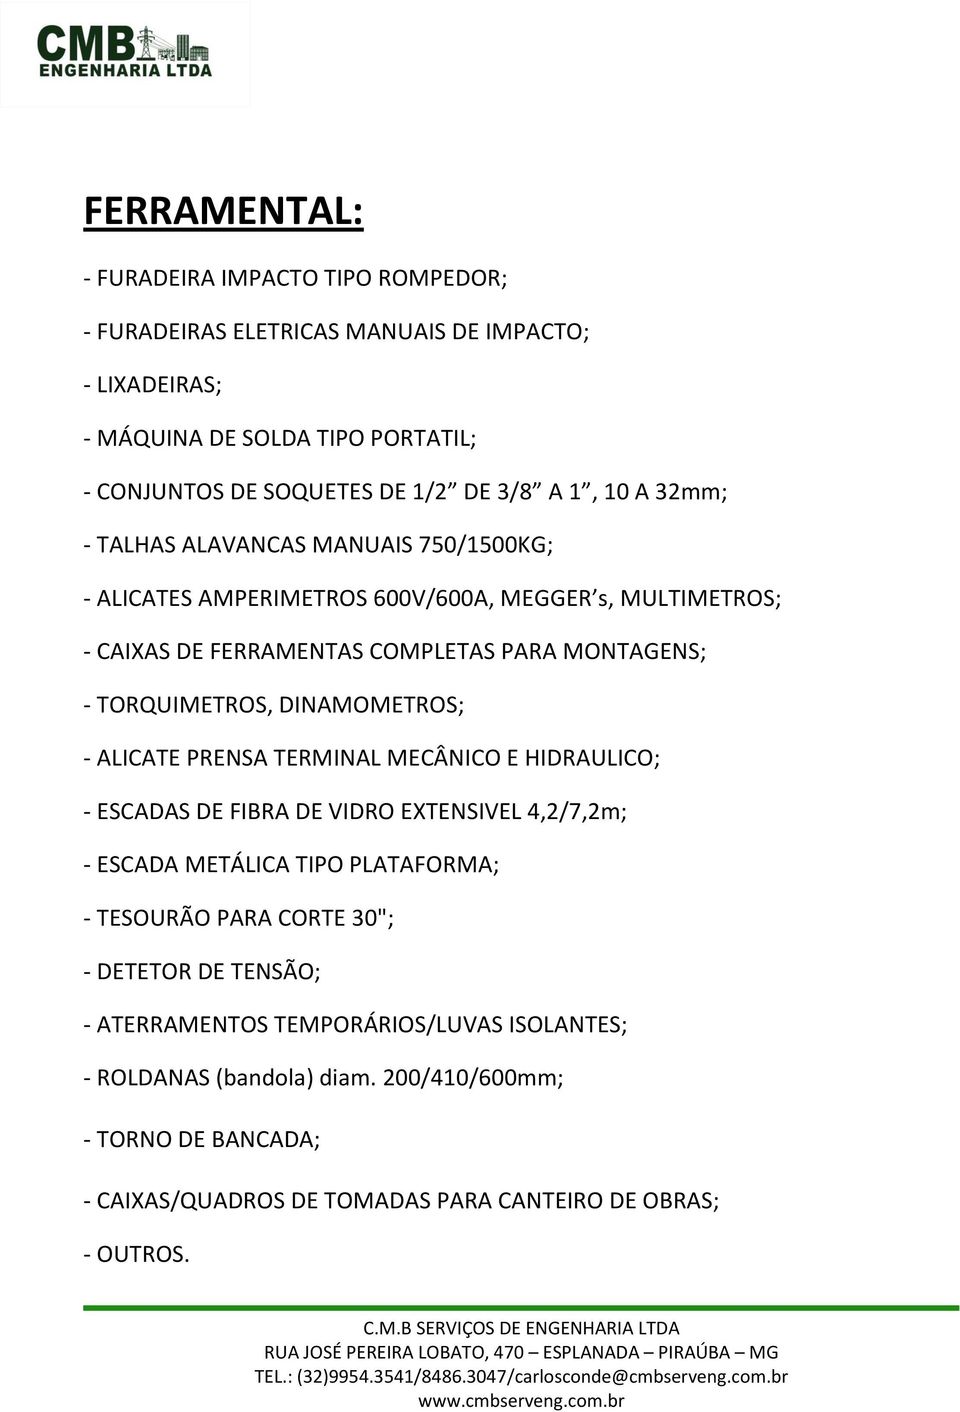 DINAMOMETROS; - ALICATE PRENSA TERMINAL MECÂNICO E HIDRAULICO; - ESCADAS DE FIBRA DE VIDRO EXTENSIVEL 4,2/7,2m; - ESCADA METÁLICA TIPO PLATAFORMA; - TESOURÃO PARA CORTE 30"; -